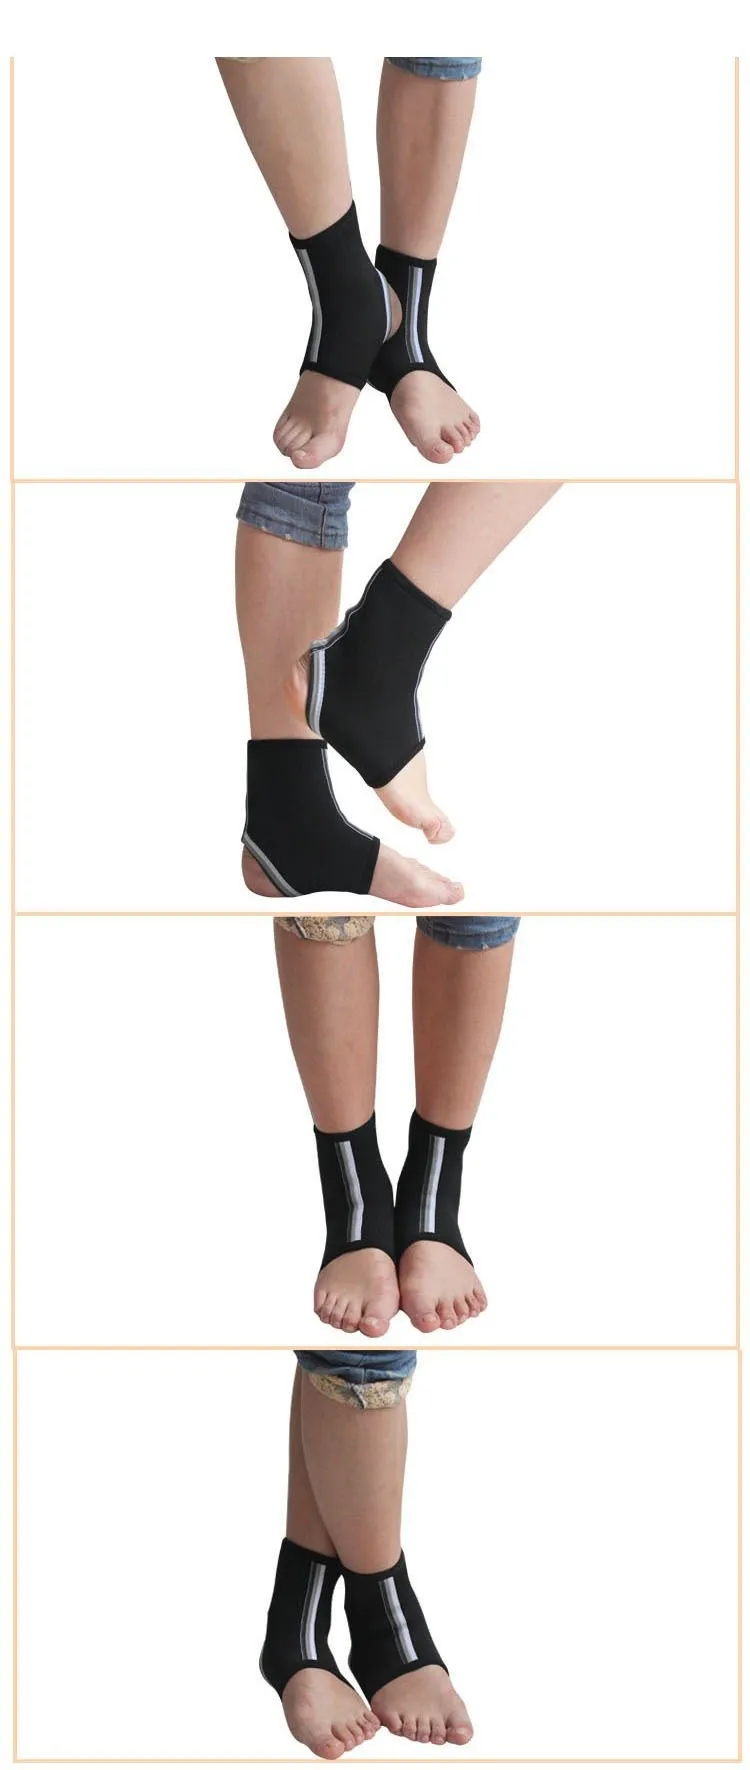 Поддержка лодыжки для ног спортивная защита щиколотки для 18-23 см растяжка для ступней Спортивная поддержка лодыжки для всех видов спорта защита ног